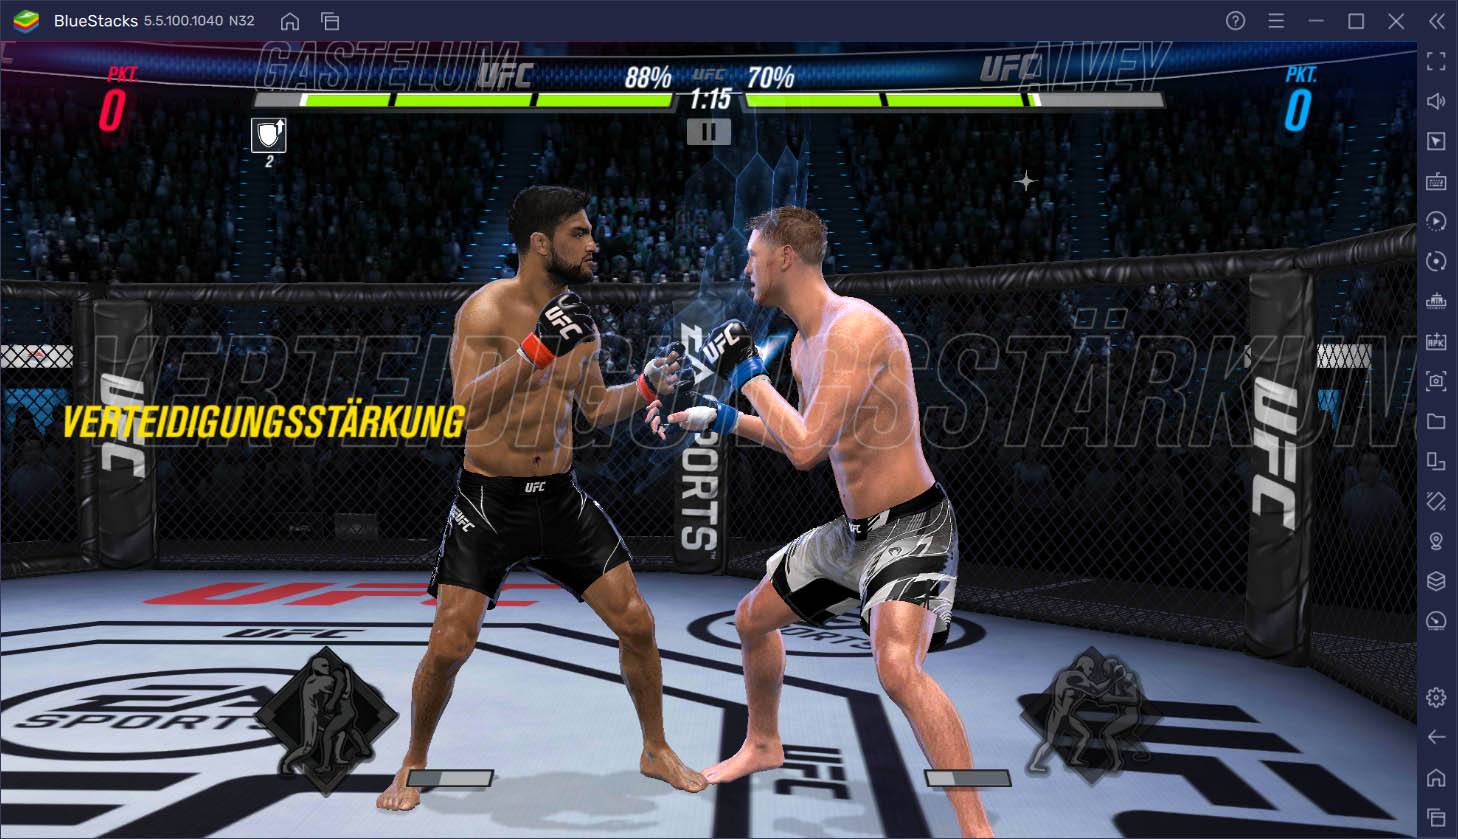 UFC Mobile 2 auf dem PC – Tipps und Tricks, um Matches zu gewinnen und KOs zu erzielen